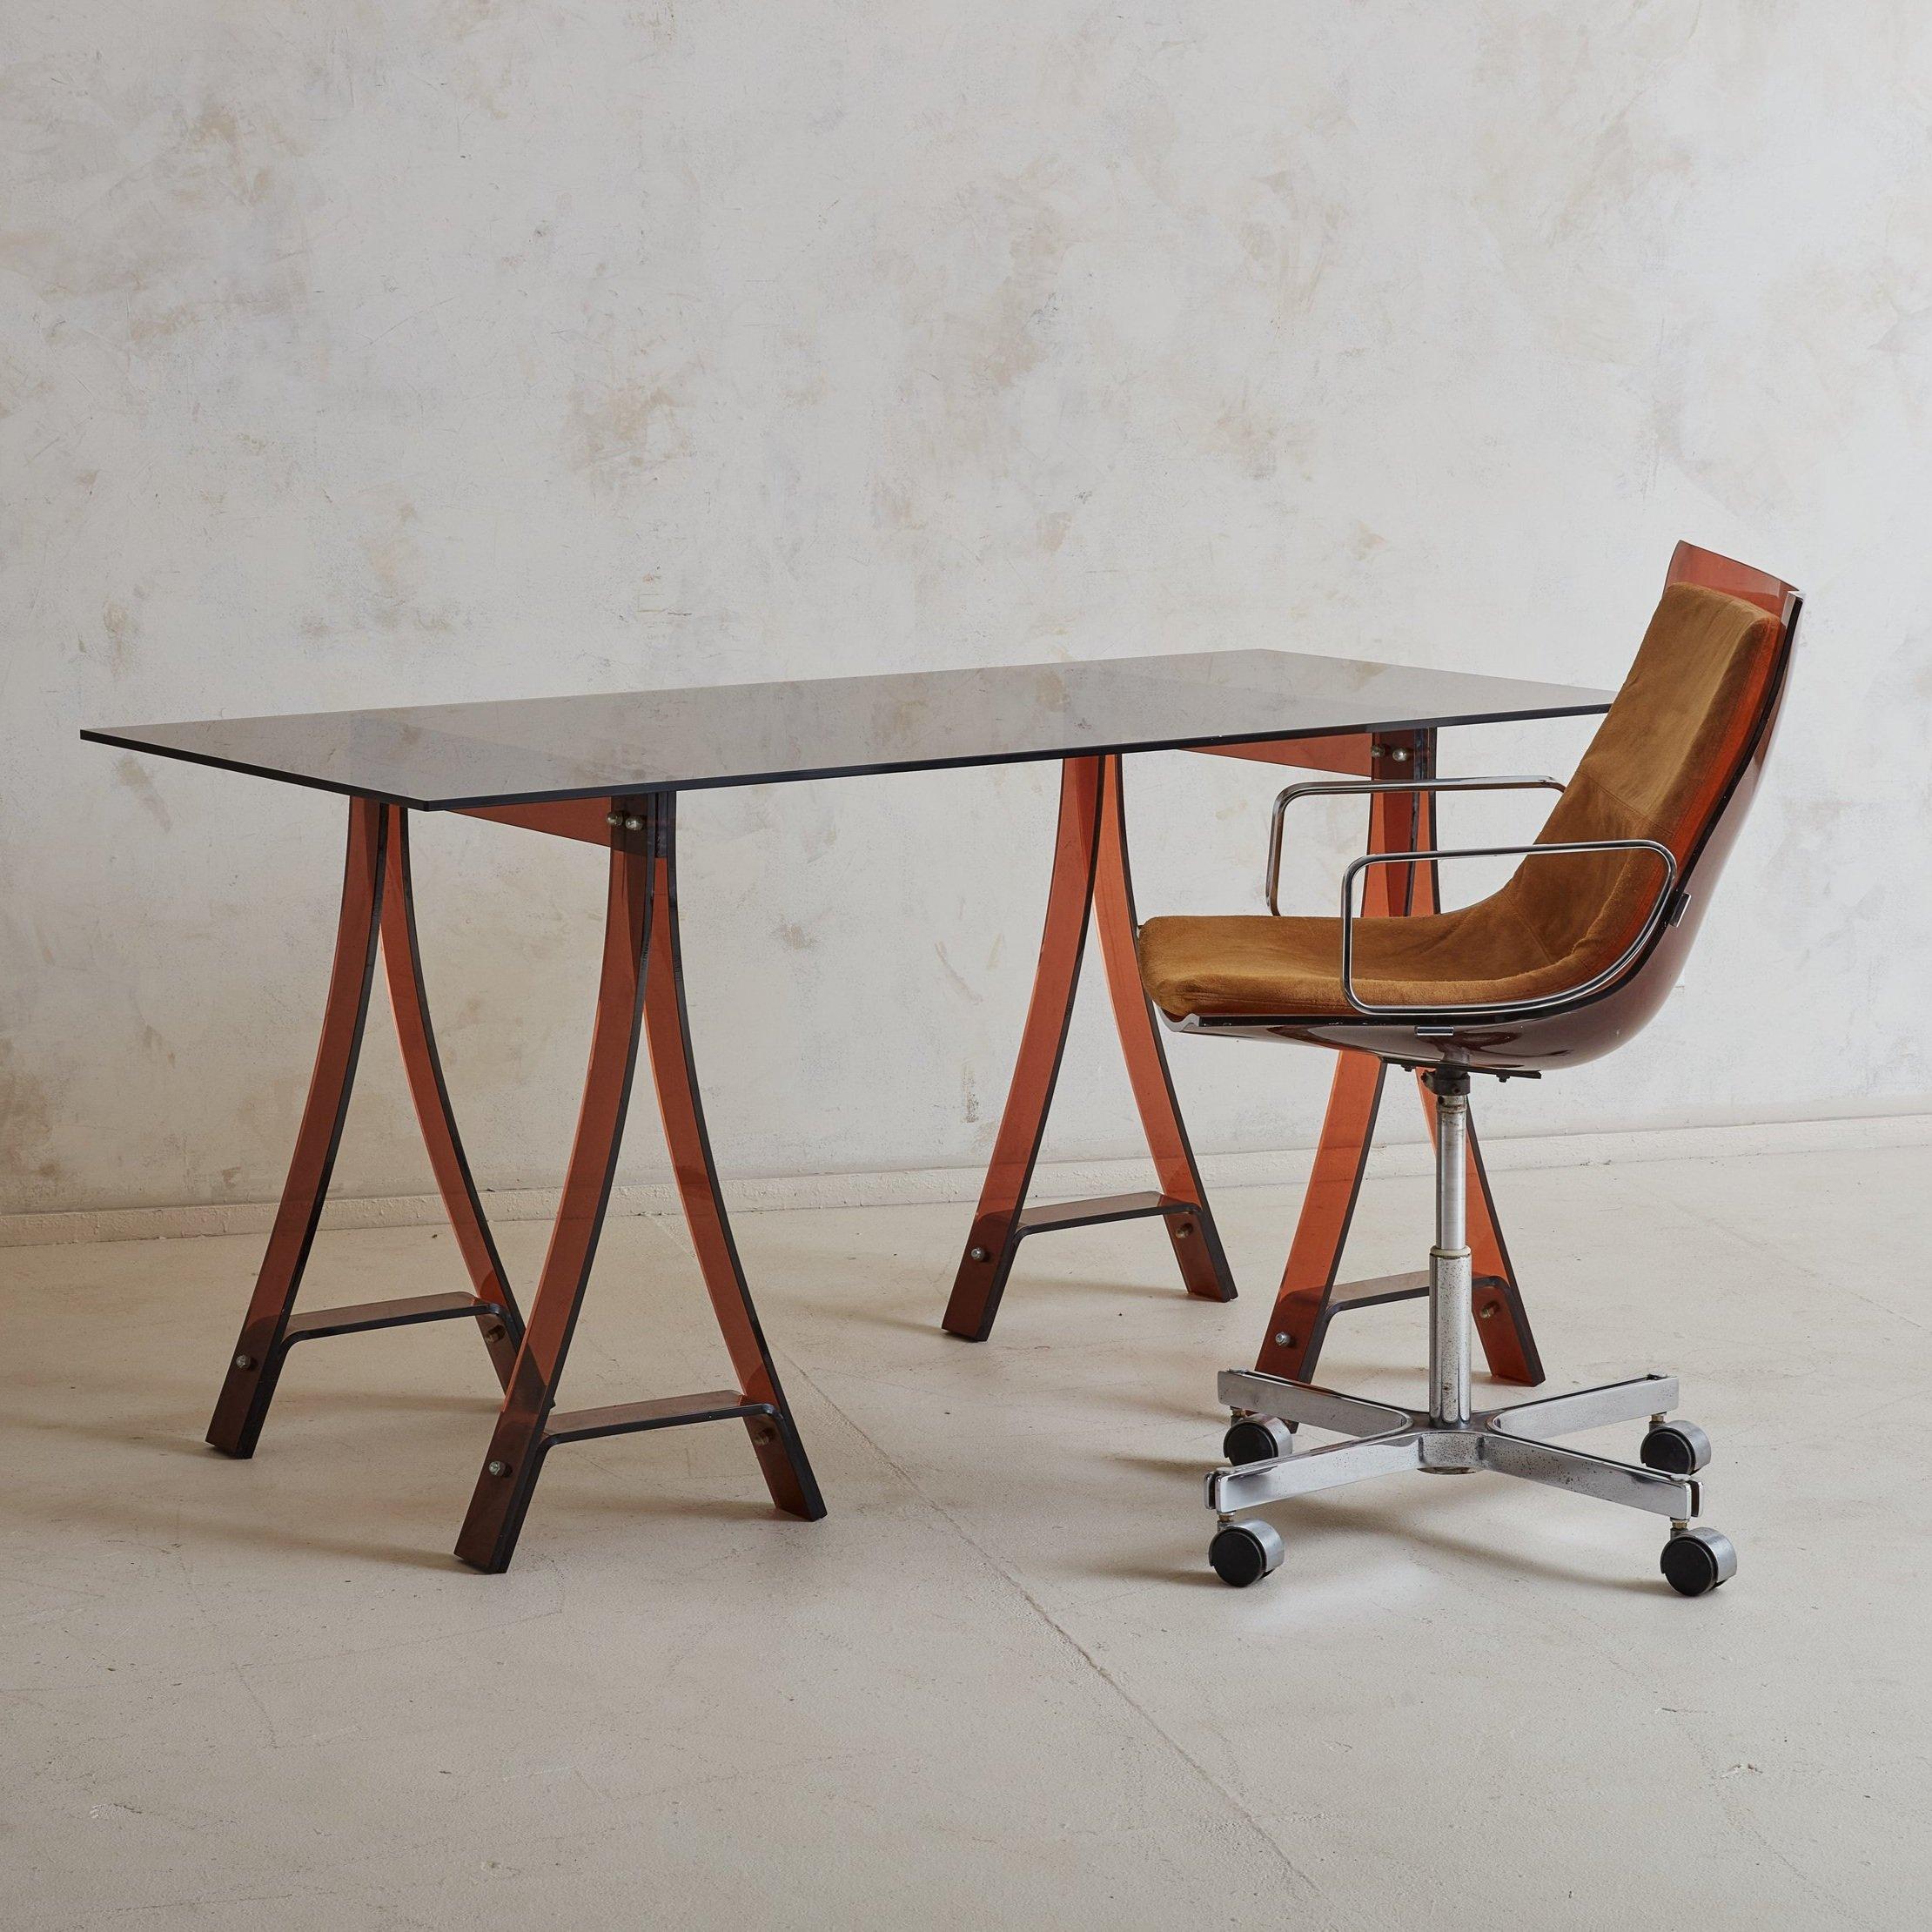 Ein wunderschöner französischer Schreibtisch oder Arbeitstisch, entworfen von Marcello Gacita + Pierre Tiberi in den 1970er Jahren. Dieses Stück besteht aus zwei bernsteinfarbenen Plexiglasbeinen mit runden Chrombeschlägen und einer rechteckigen